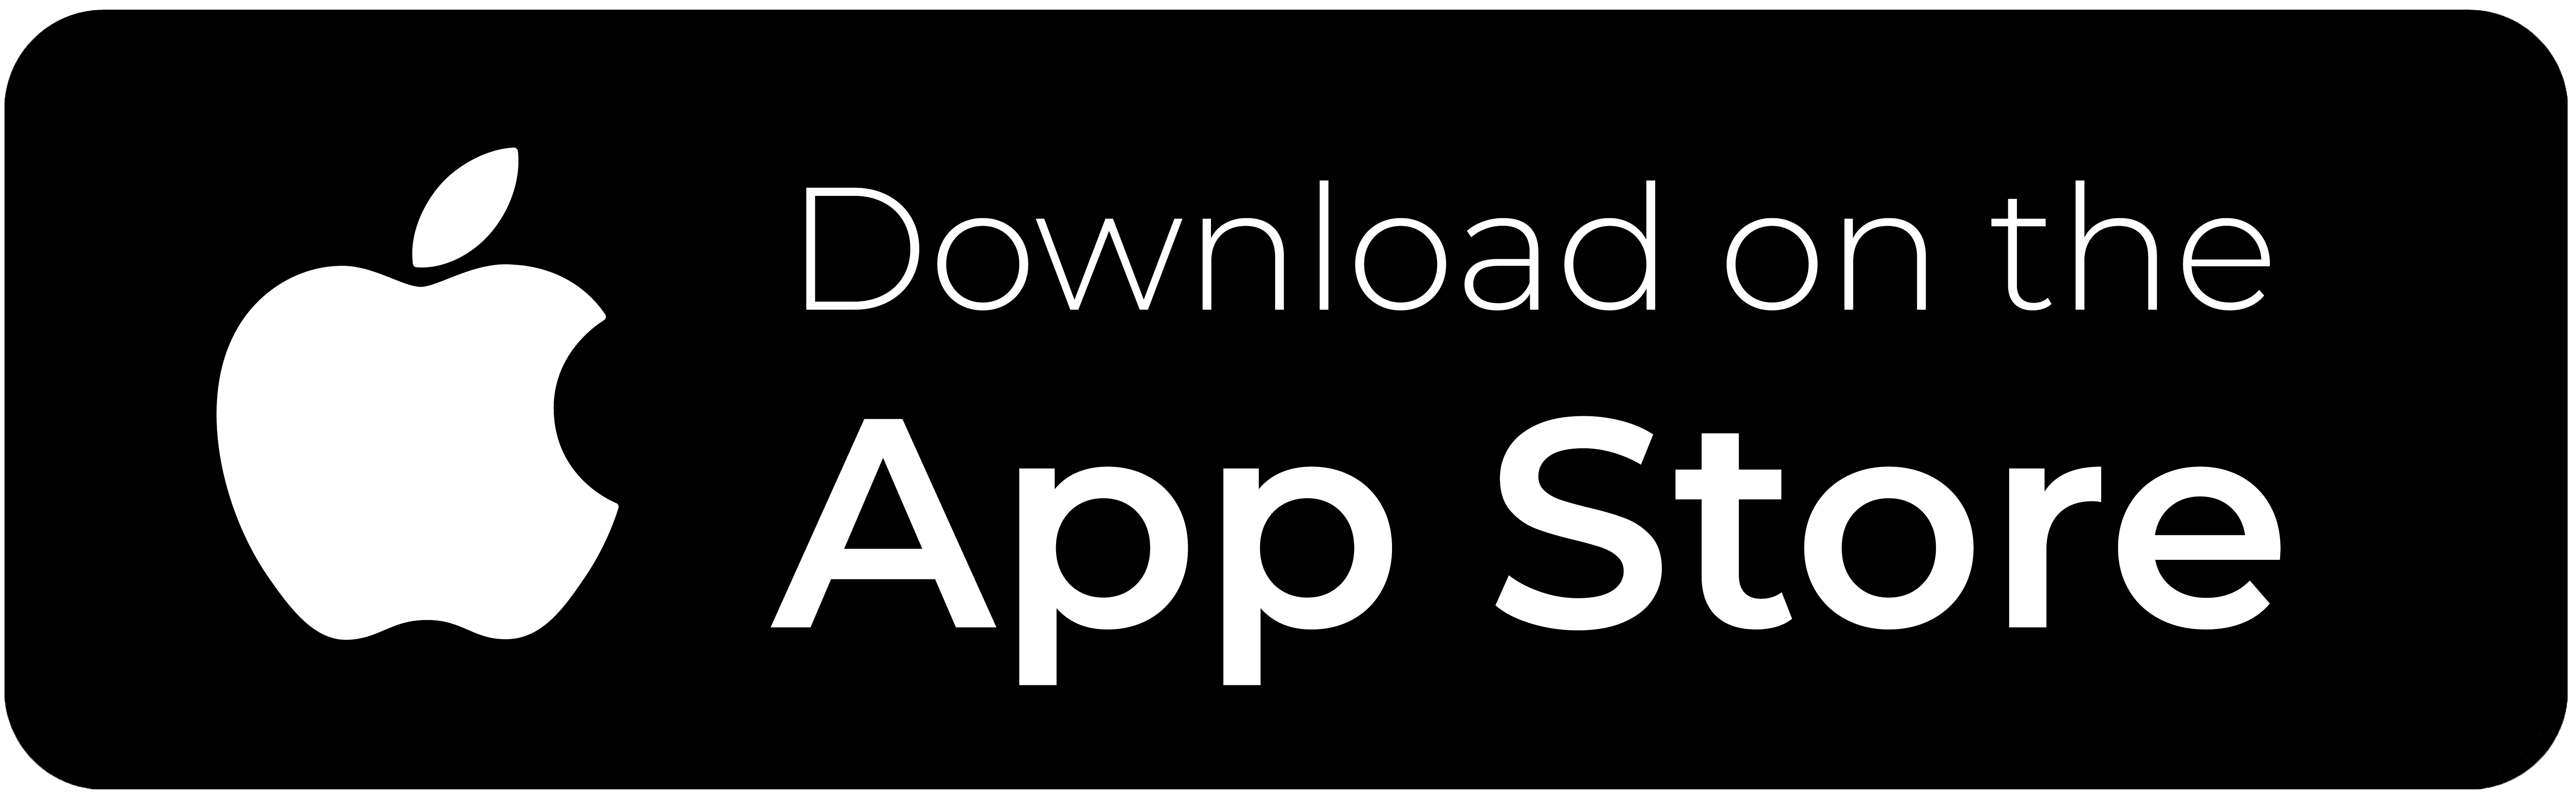 Last ned Telia Bedriftsnett app  i App store.